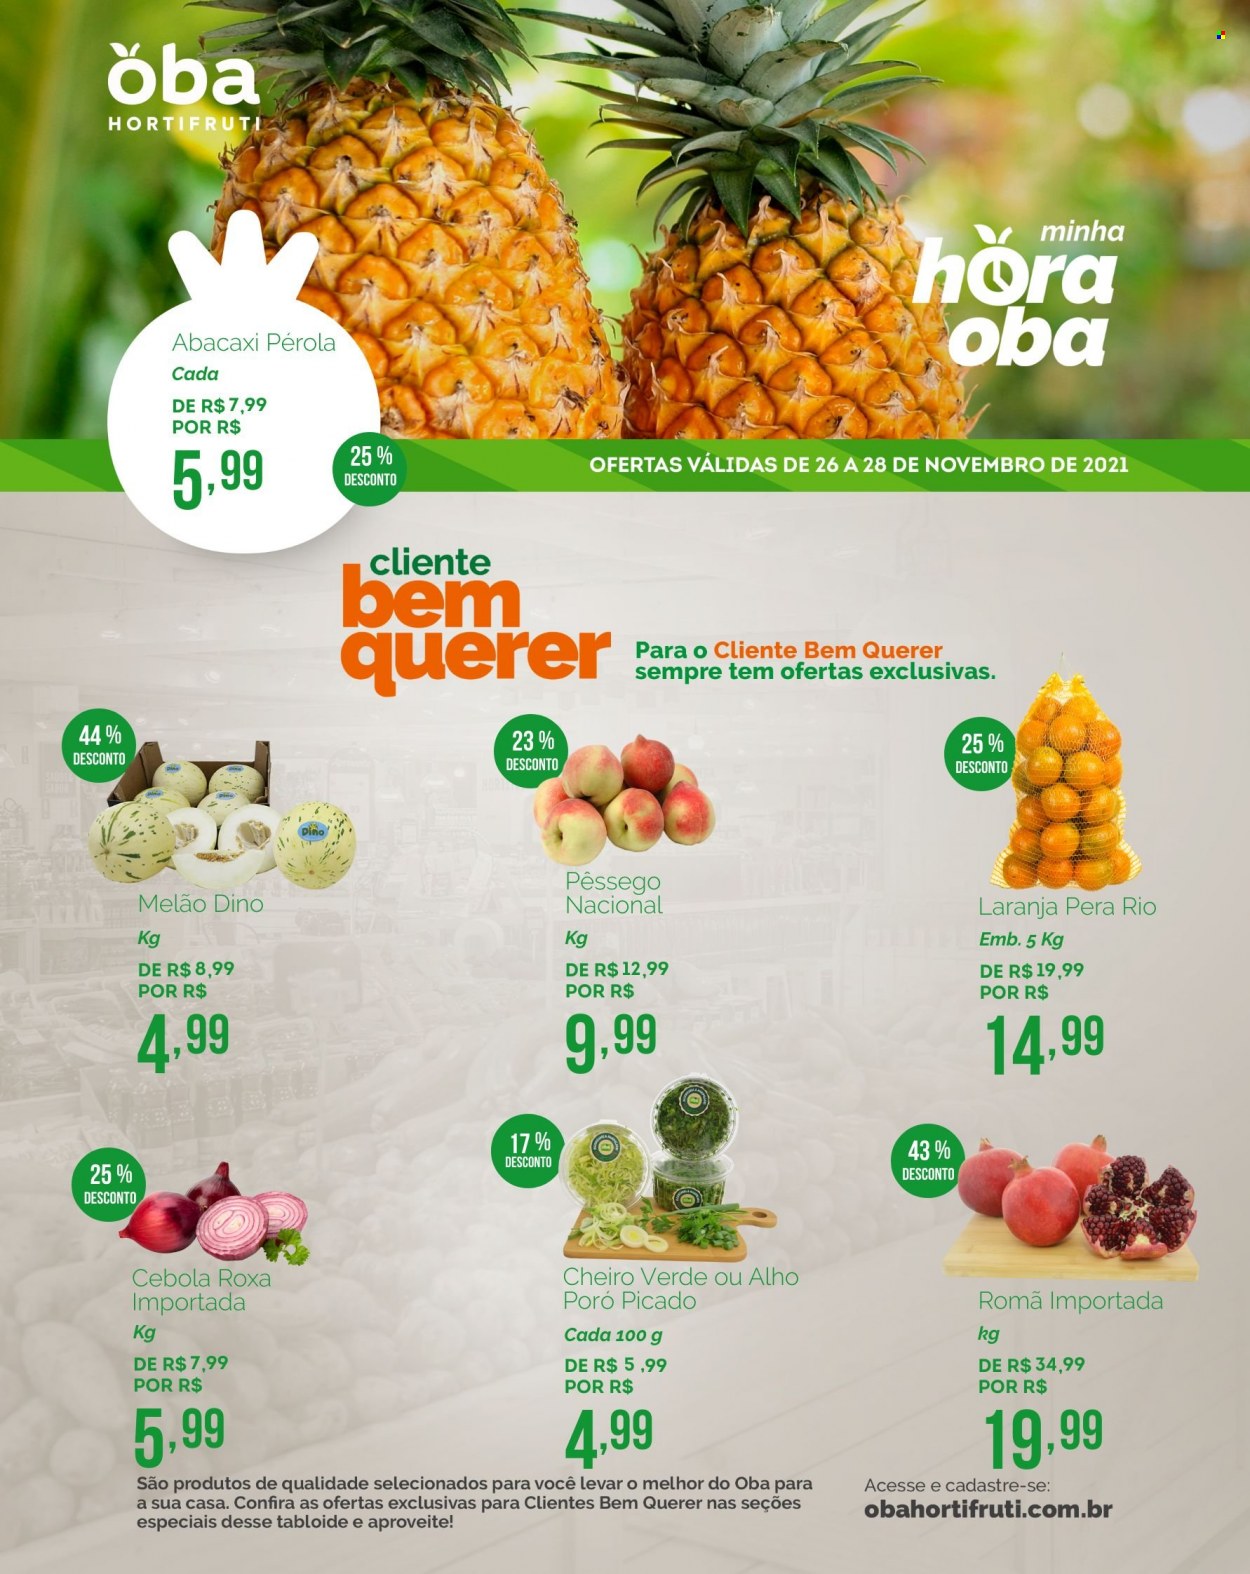 thumbnail - Folheto Oba Hortifruti - 26/11/2021 - 28/11/2021 - Produtos em promoção - pera, abacaxi, laranja, melão, pêssego, alho-poró, cebola, cheiro verde. Página 1.